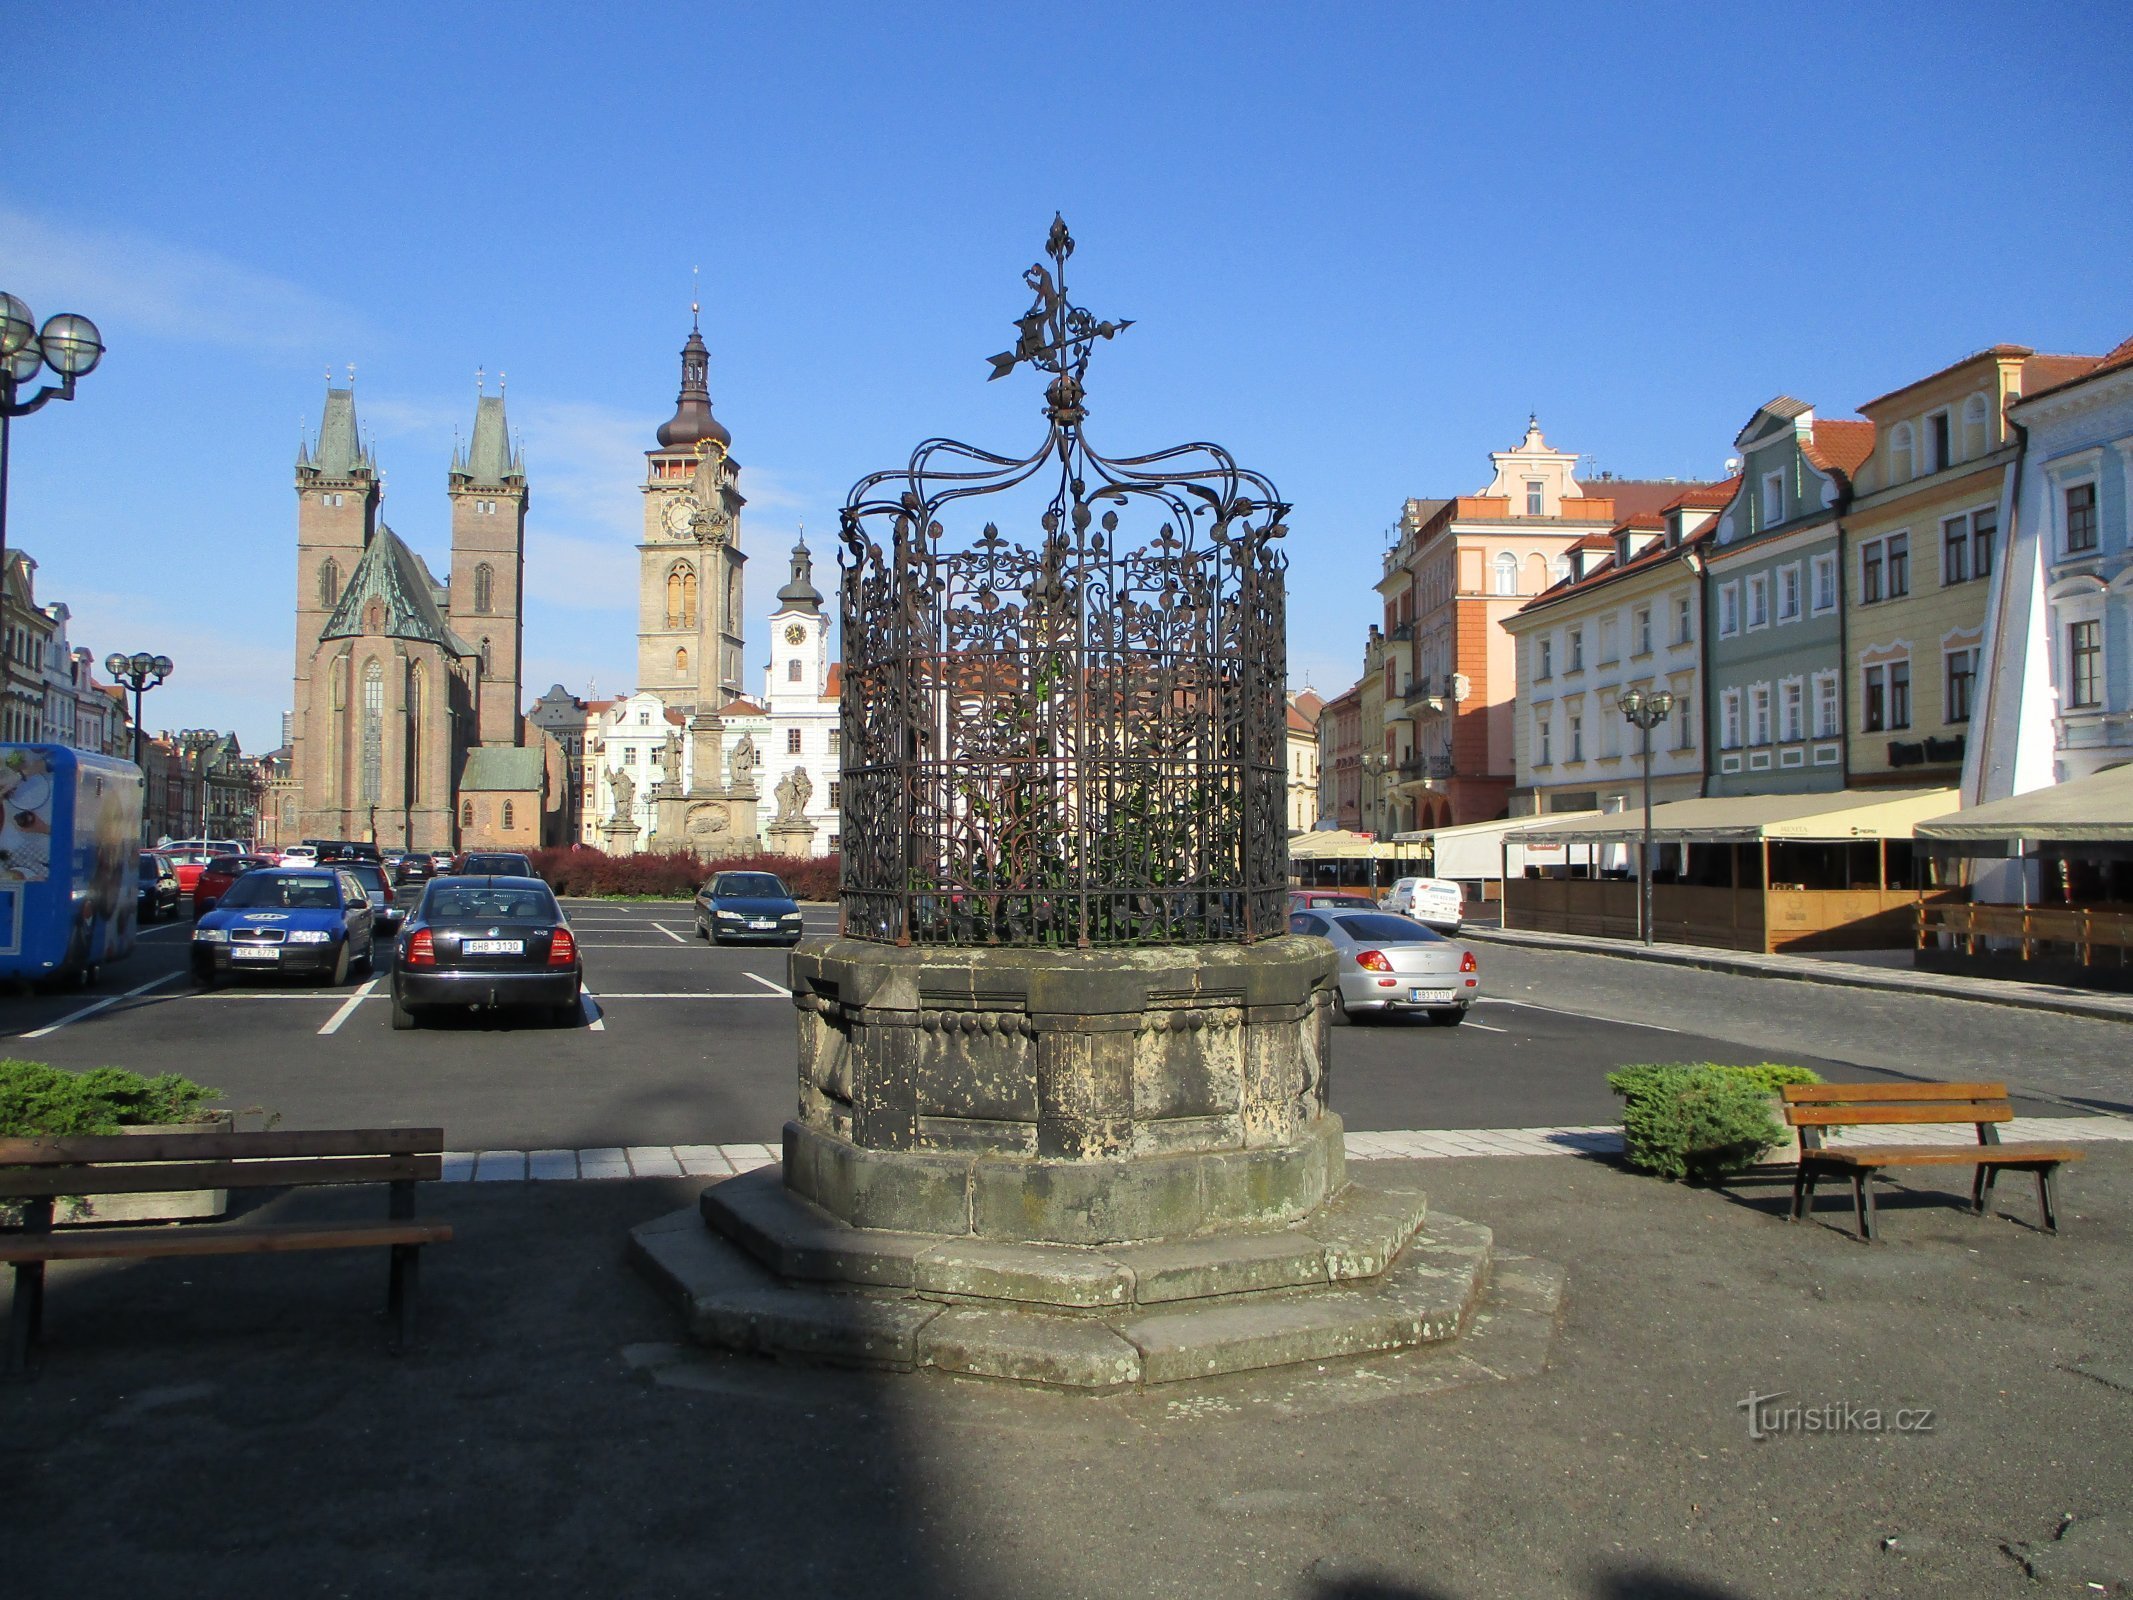 Fonte na Grande Praça (Hradec Králové, 6.7.2019/XNUMX/XNUMX)